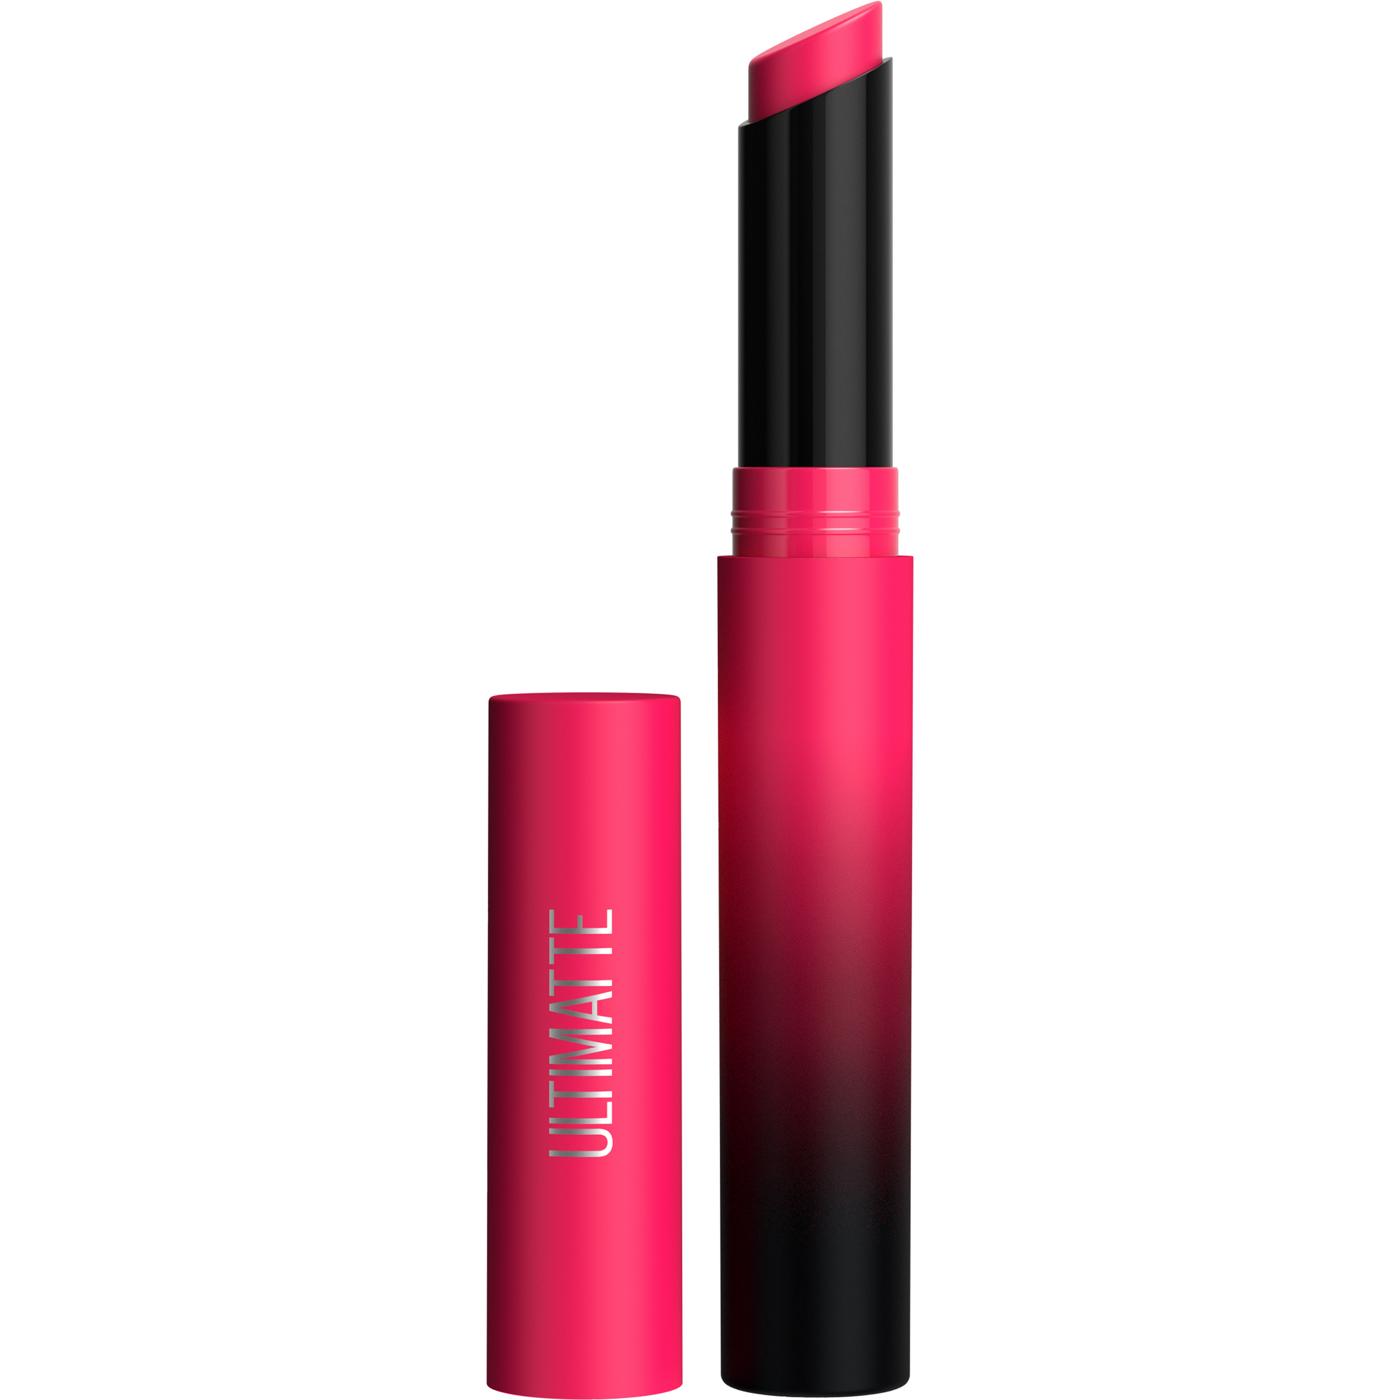 Maybelline Color Sensational Ultimatte Slim Lipstick Makeup More Magenta; image 1 of 3